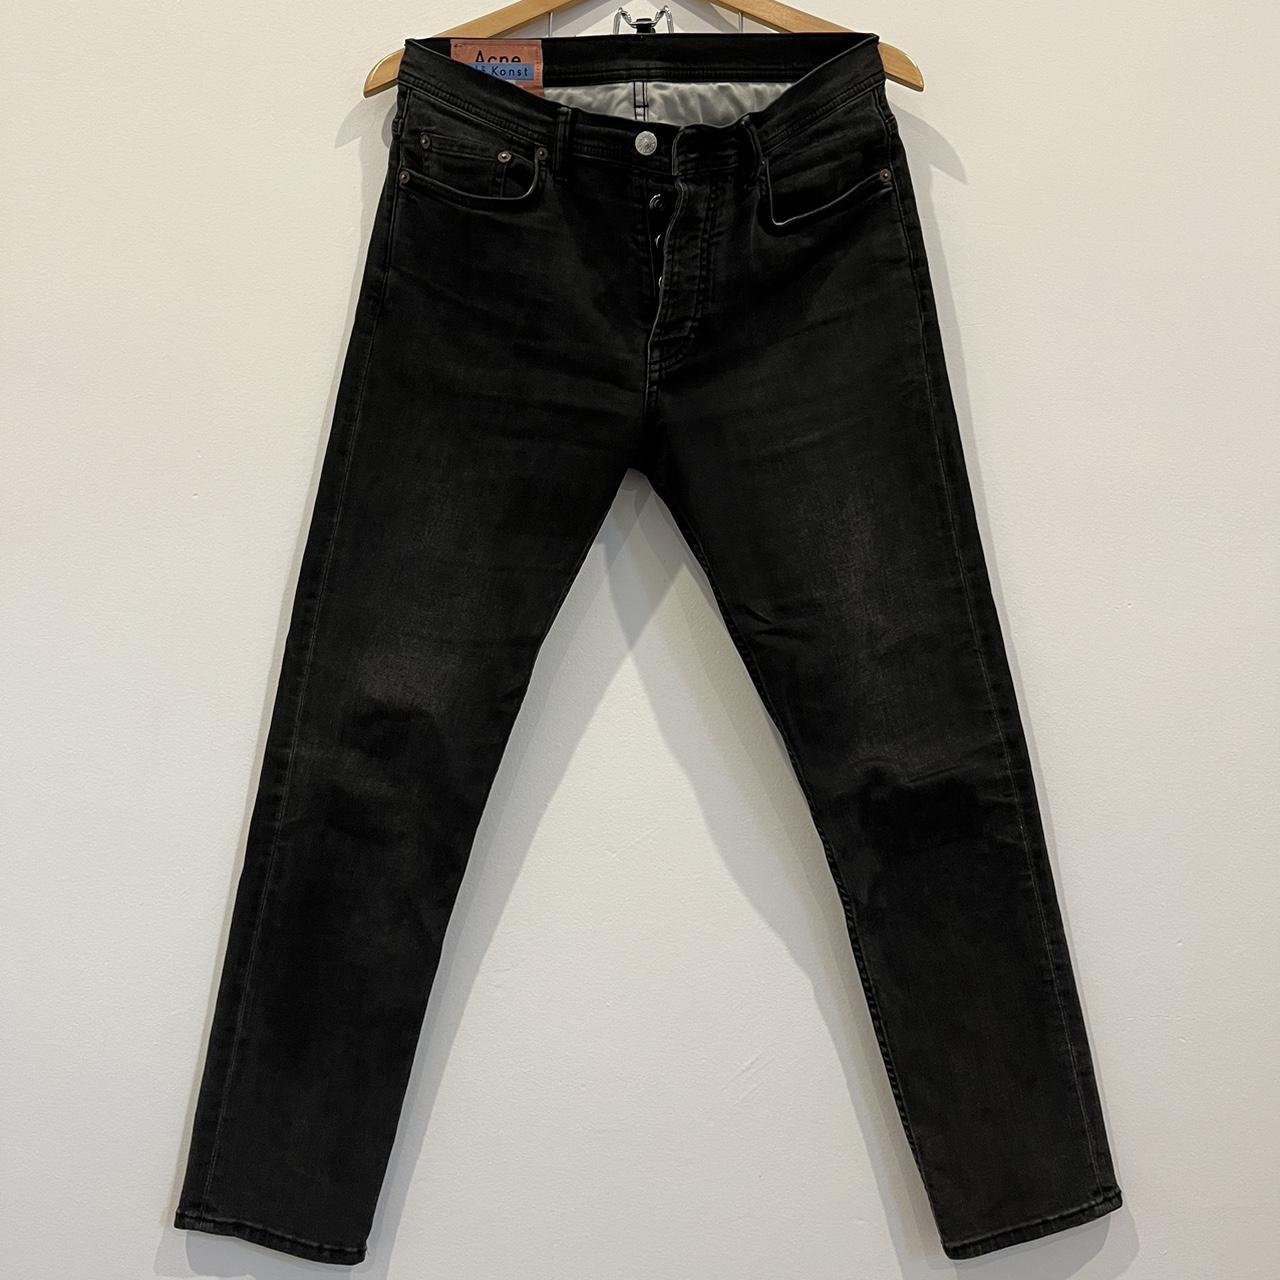 Acne studios River slim jeans washed black 30/30 - Depop